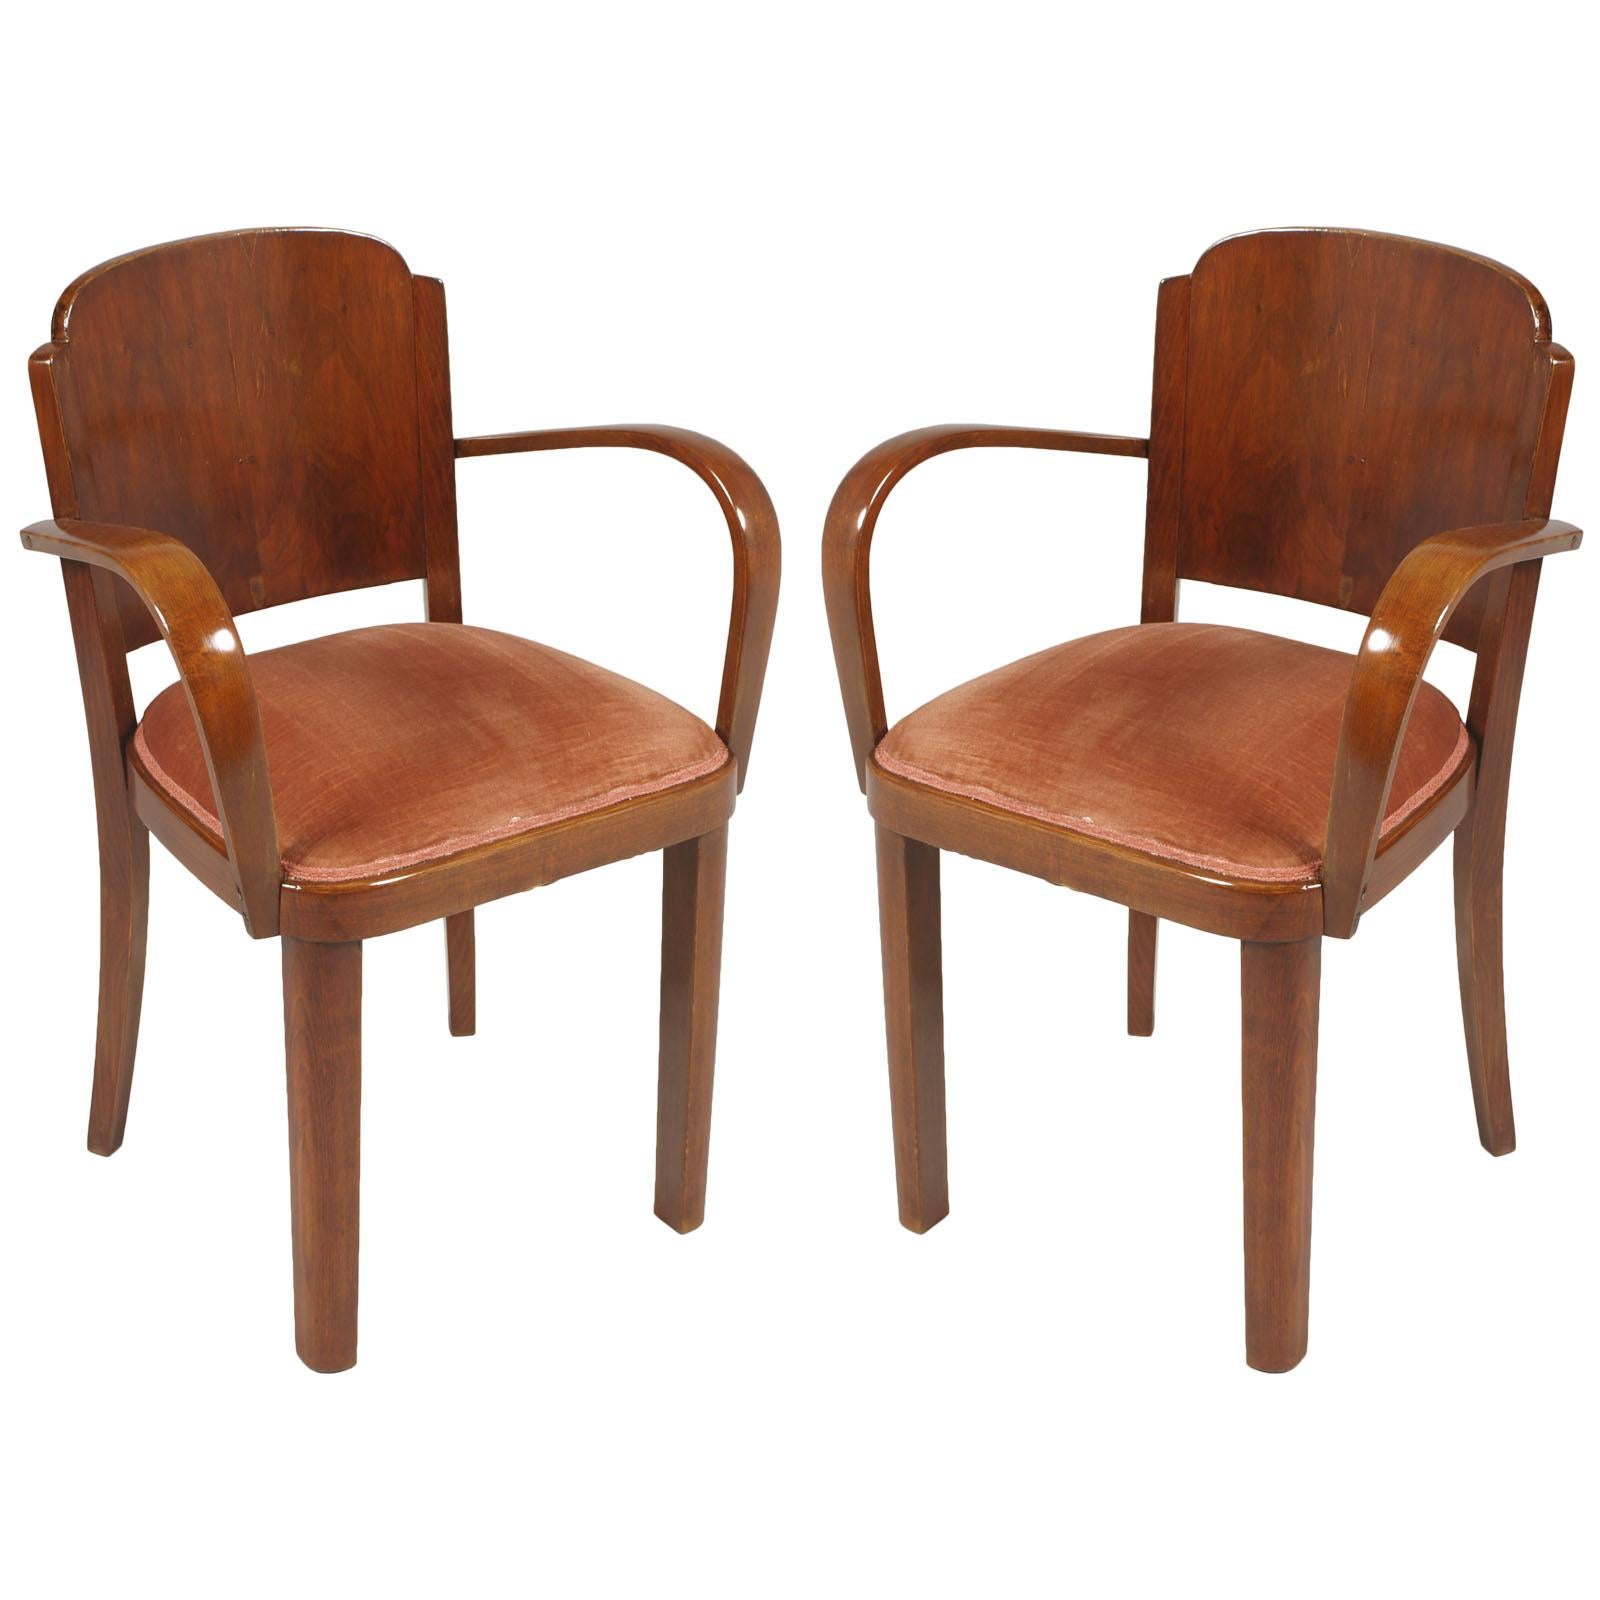 Italian 1920s Art Deco Bridge Chairs, All Original Velvet Upholstered, in Walnut